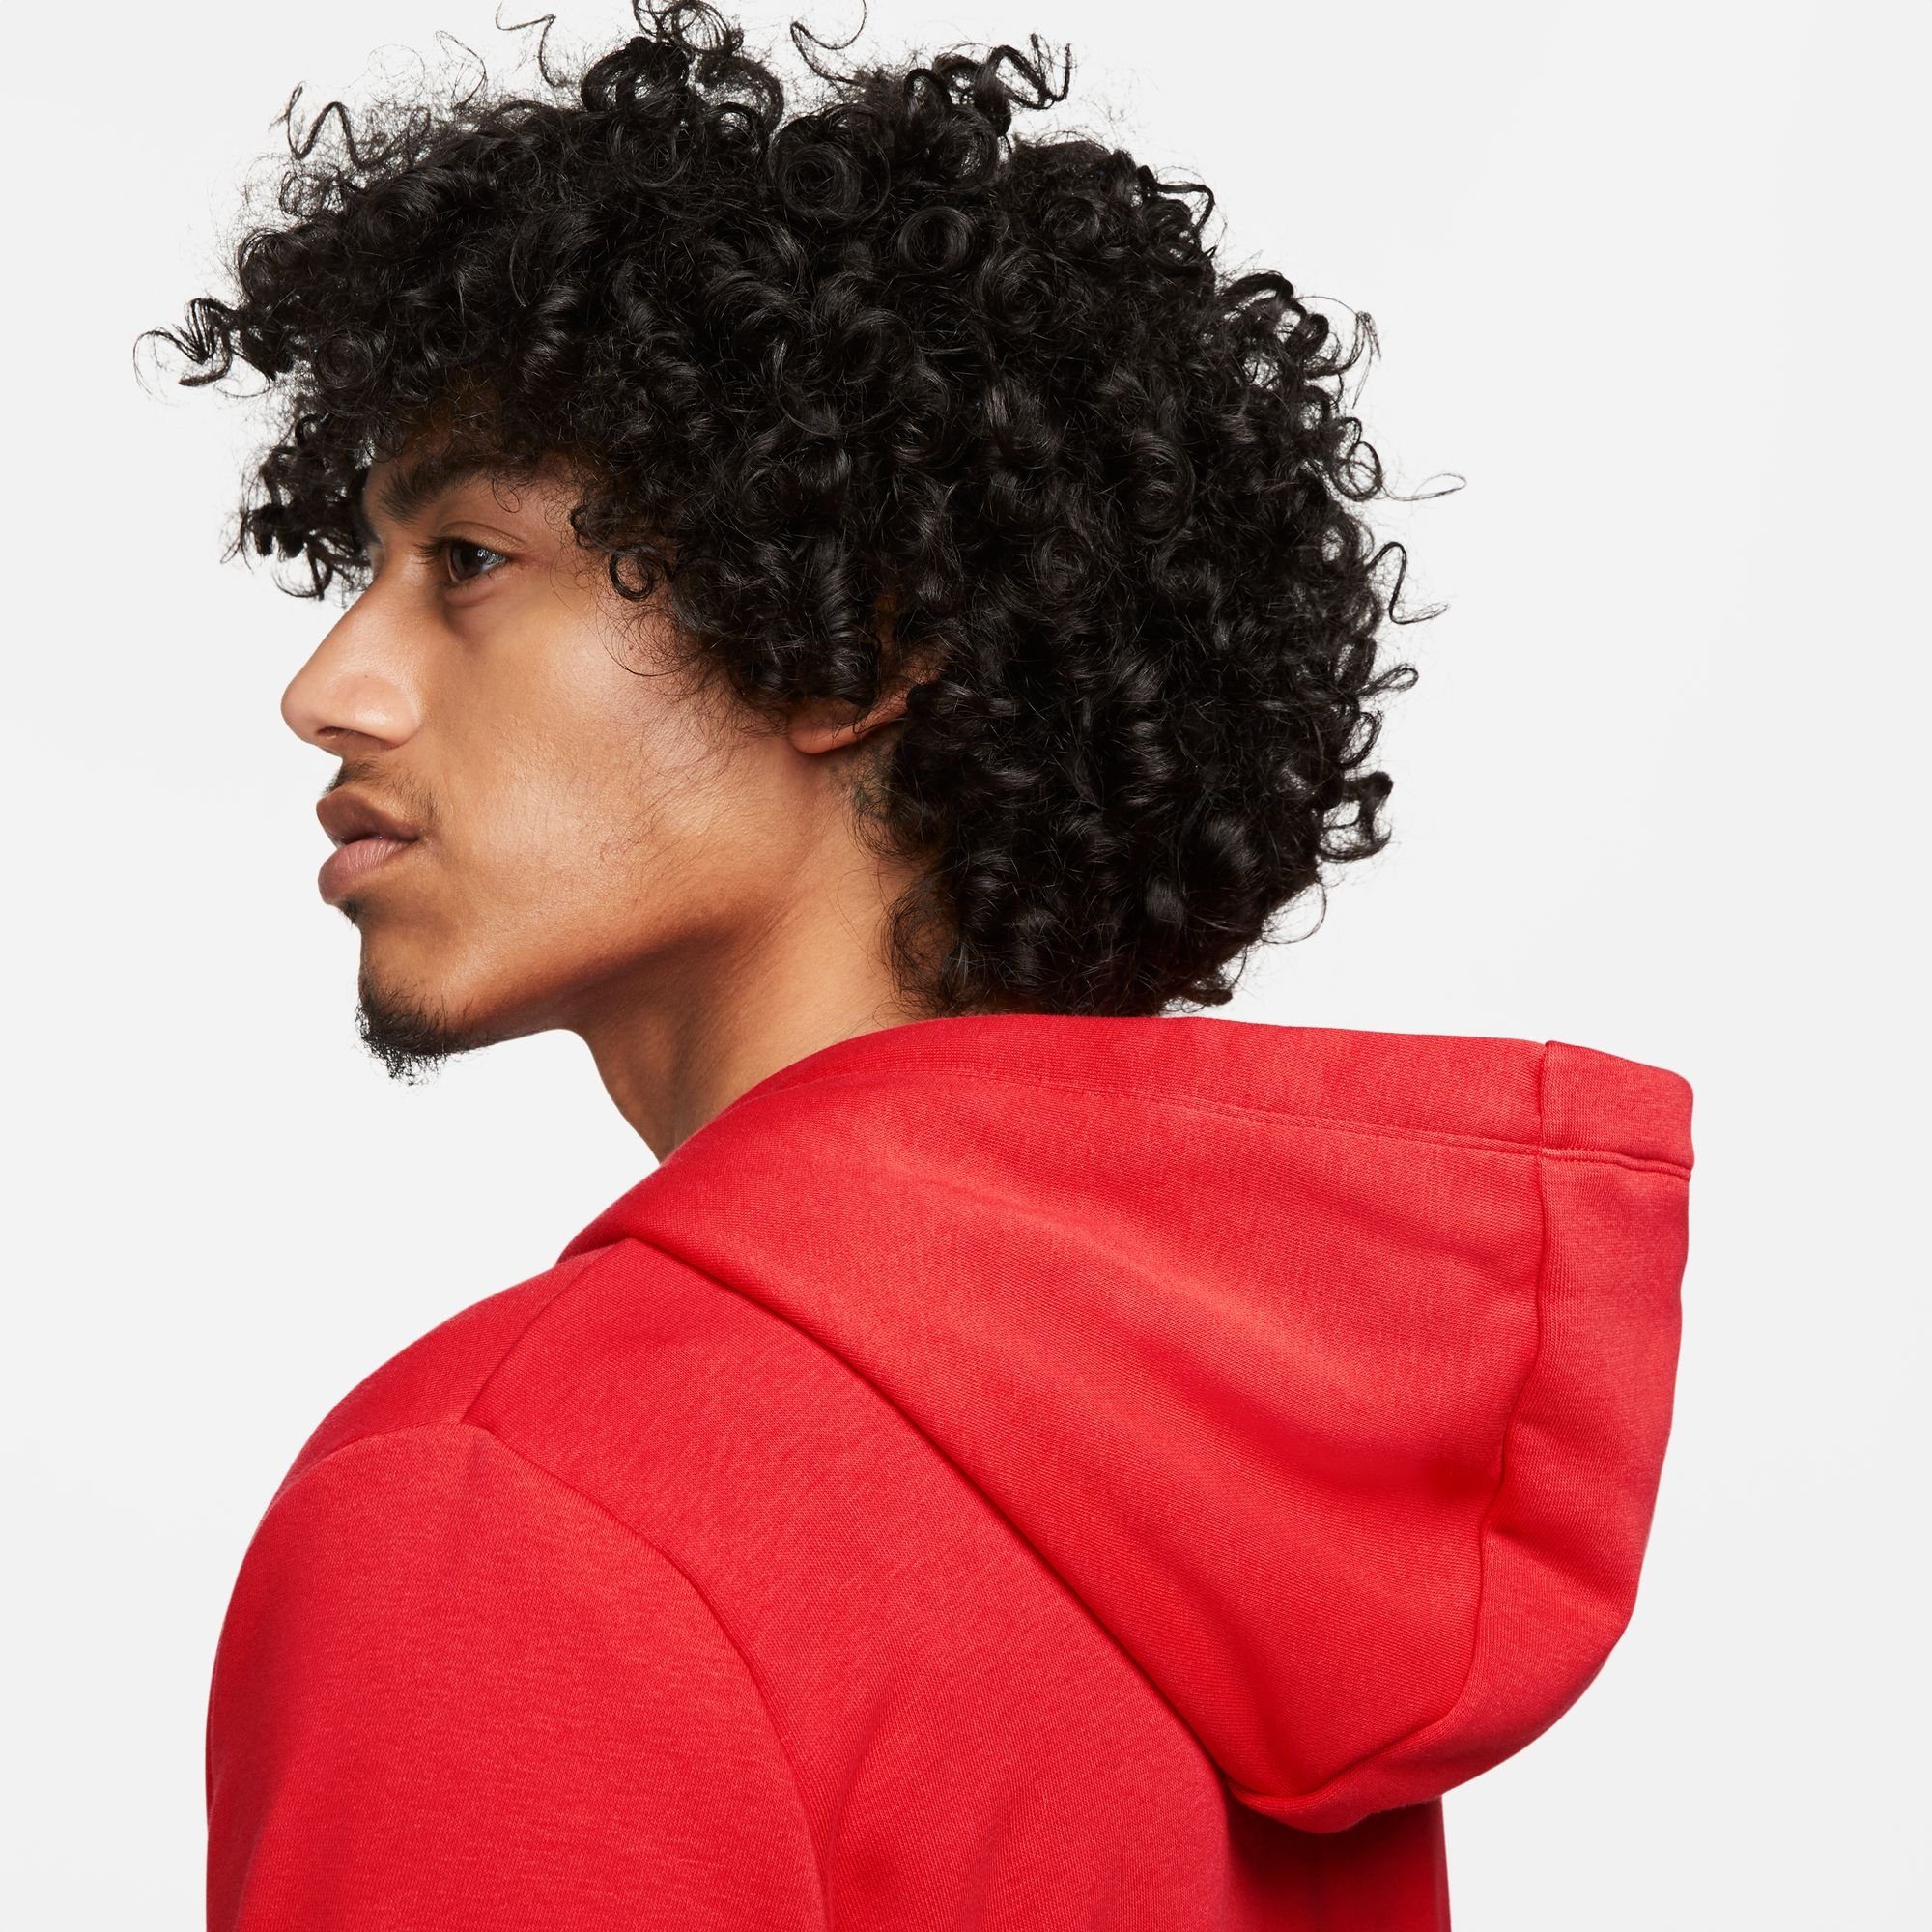 UNIVERSITY Women's Nike Fleece Hoodie Sportswear Full-Zip Kapuzensweatjacke RED/WHITE Club